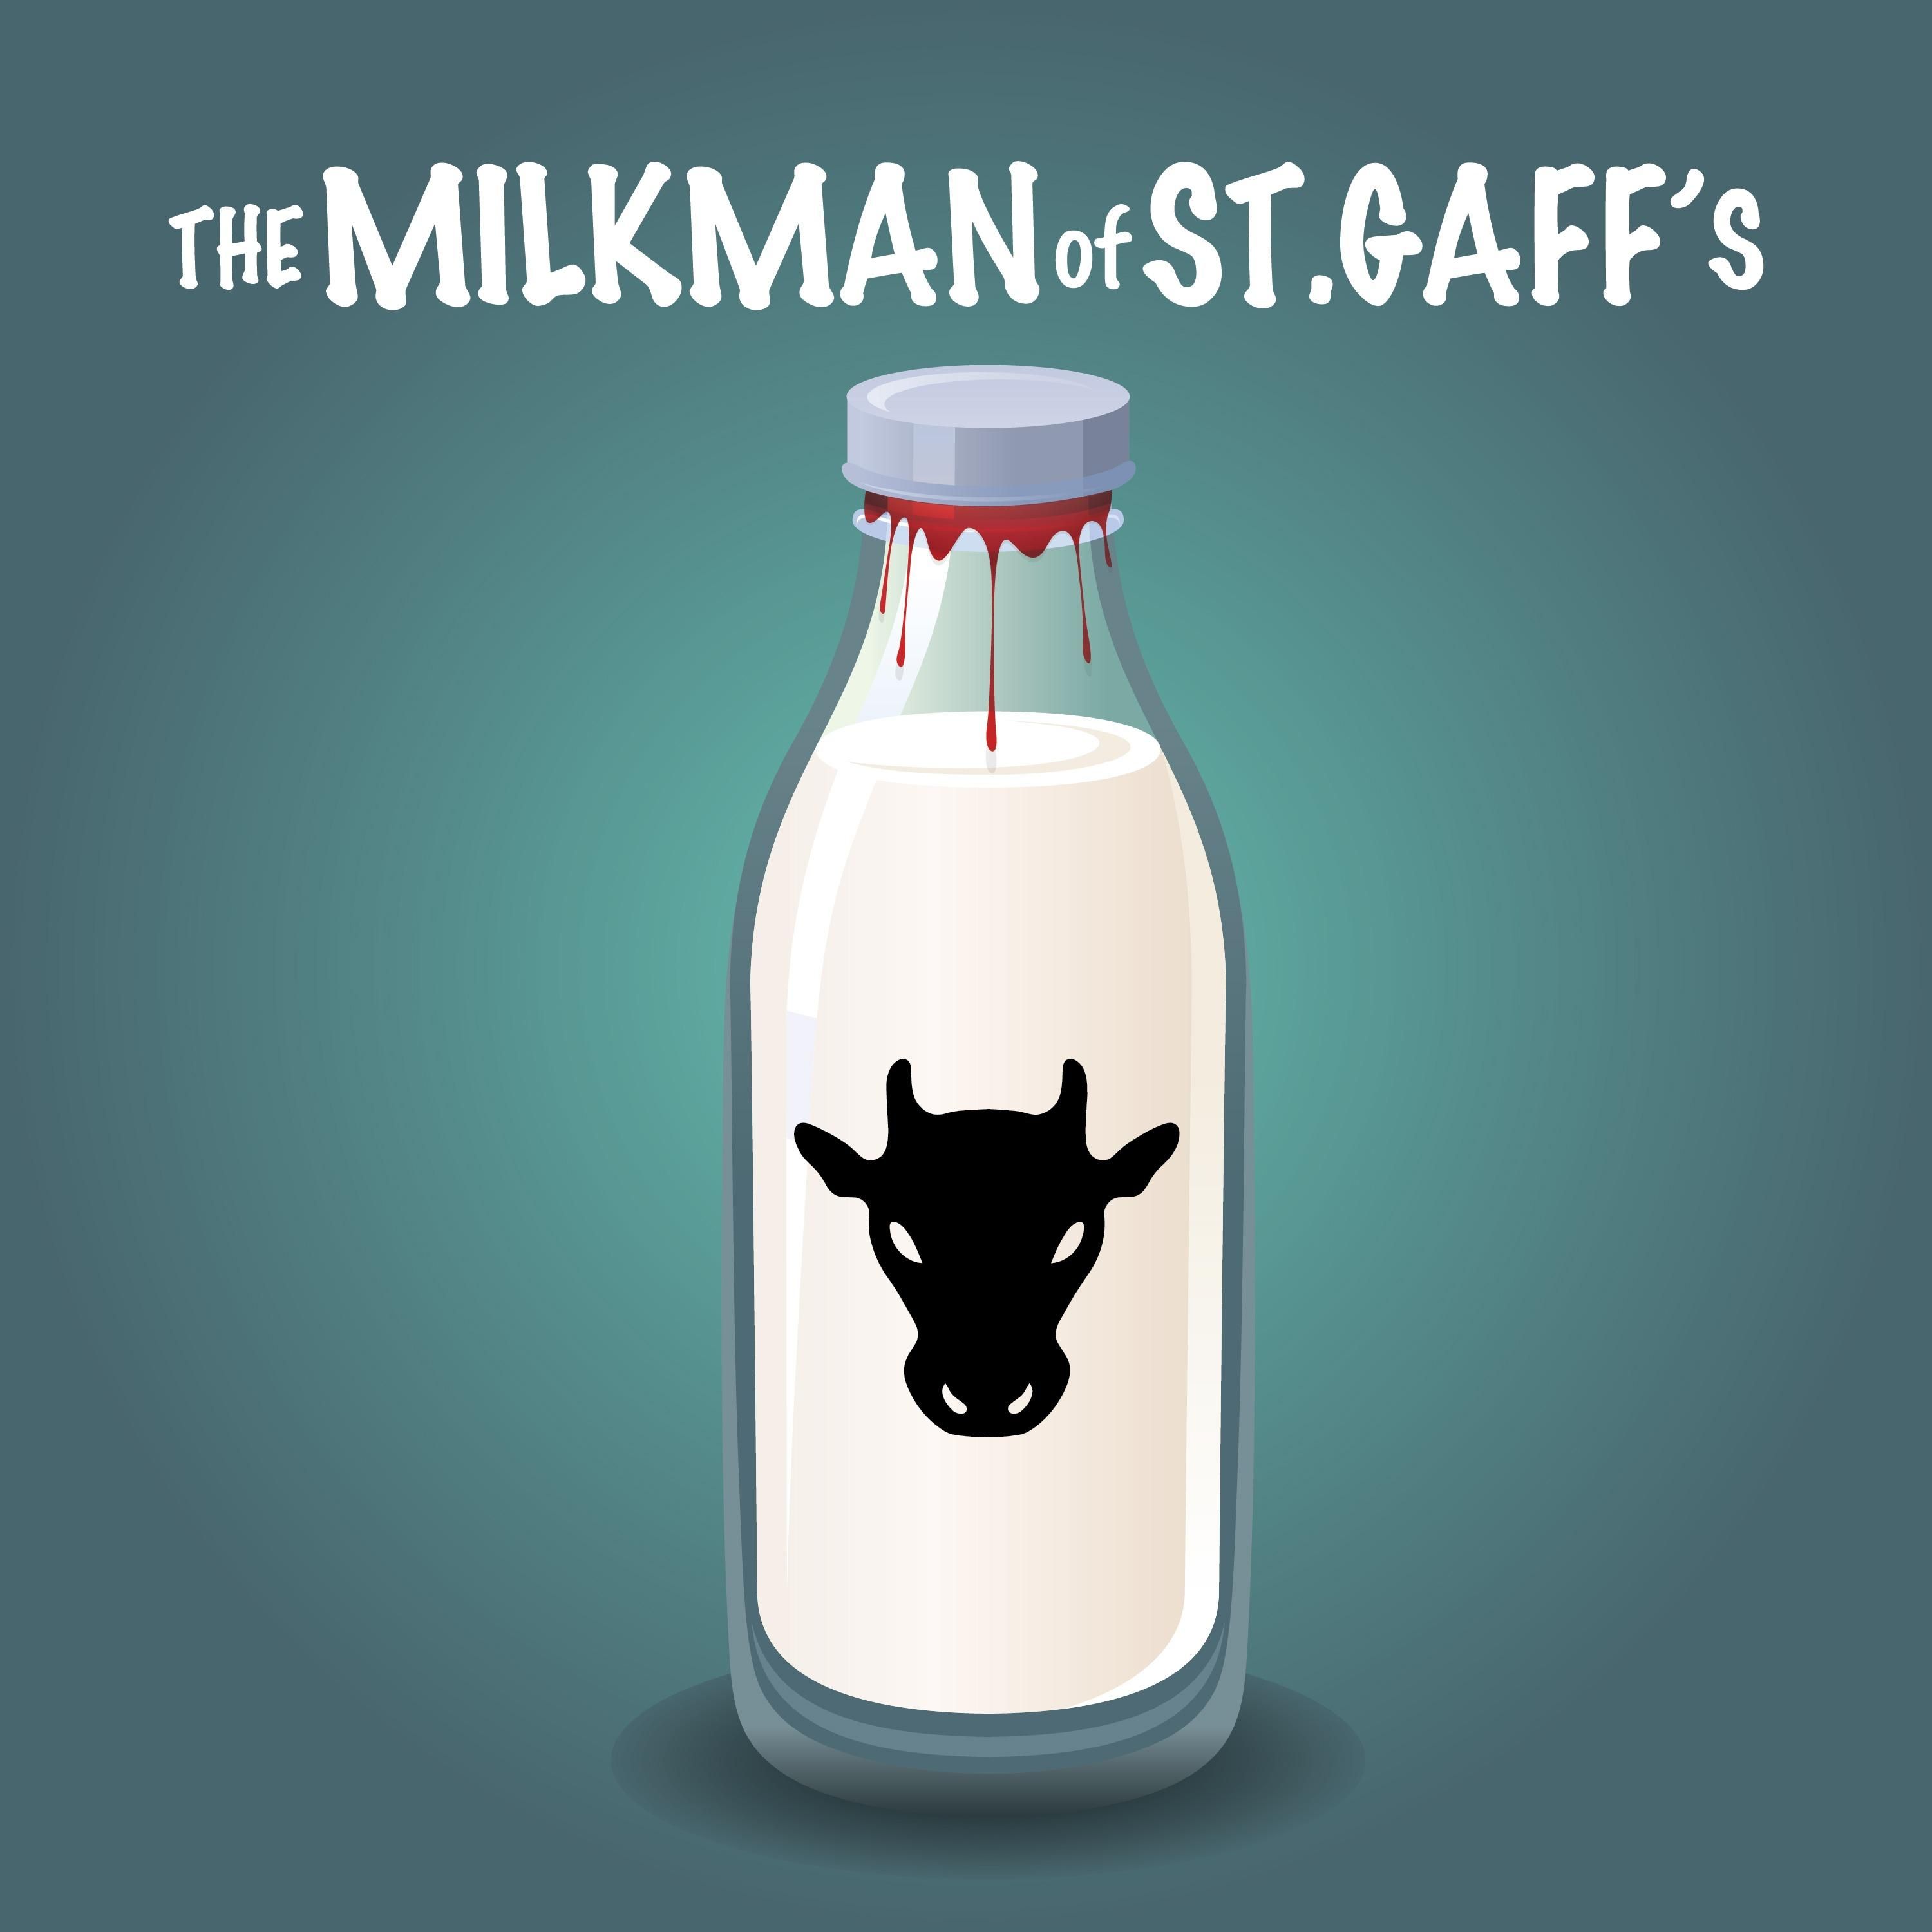 9. The Milk